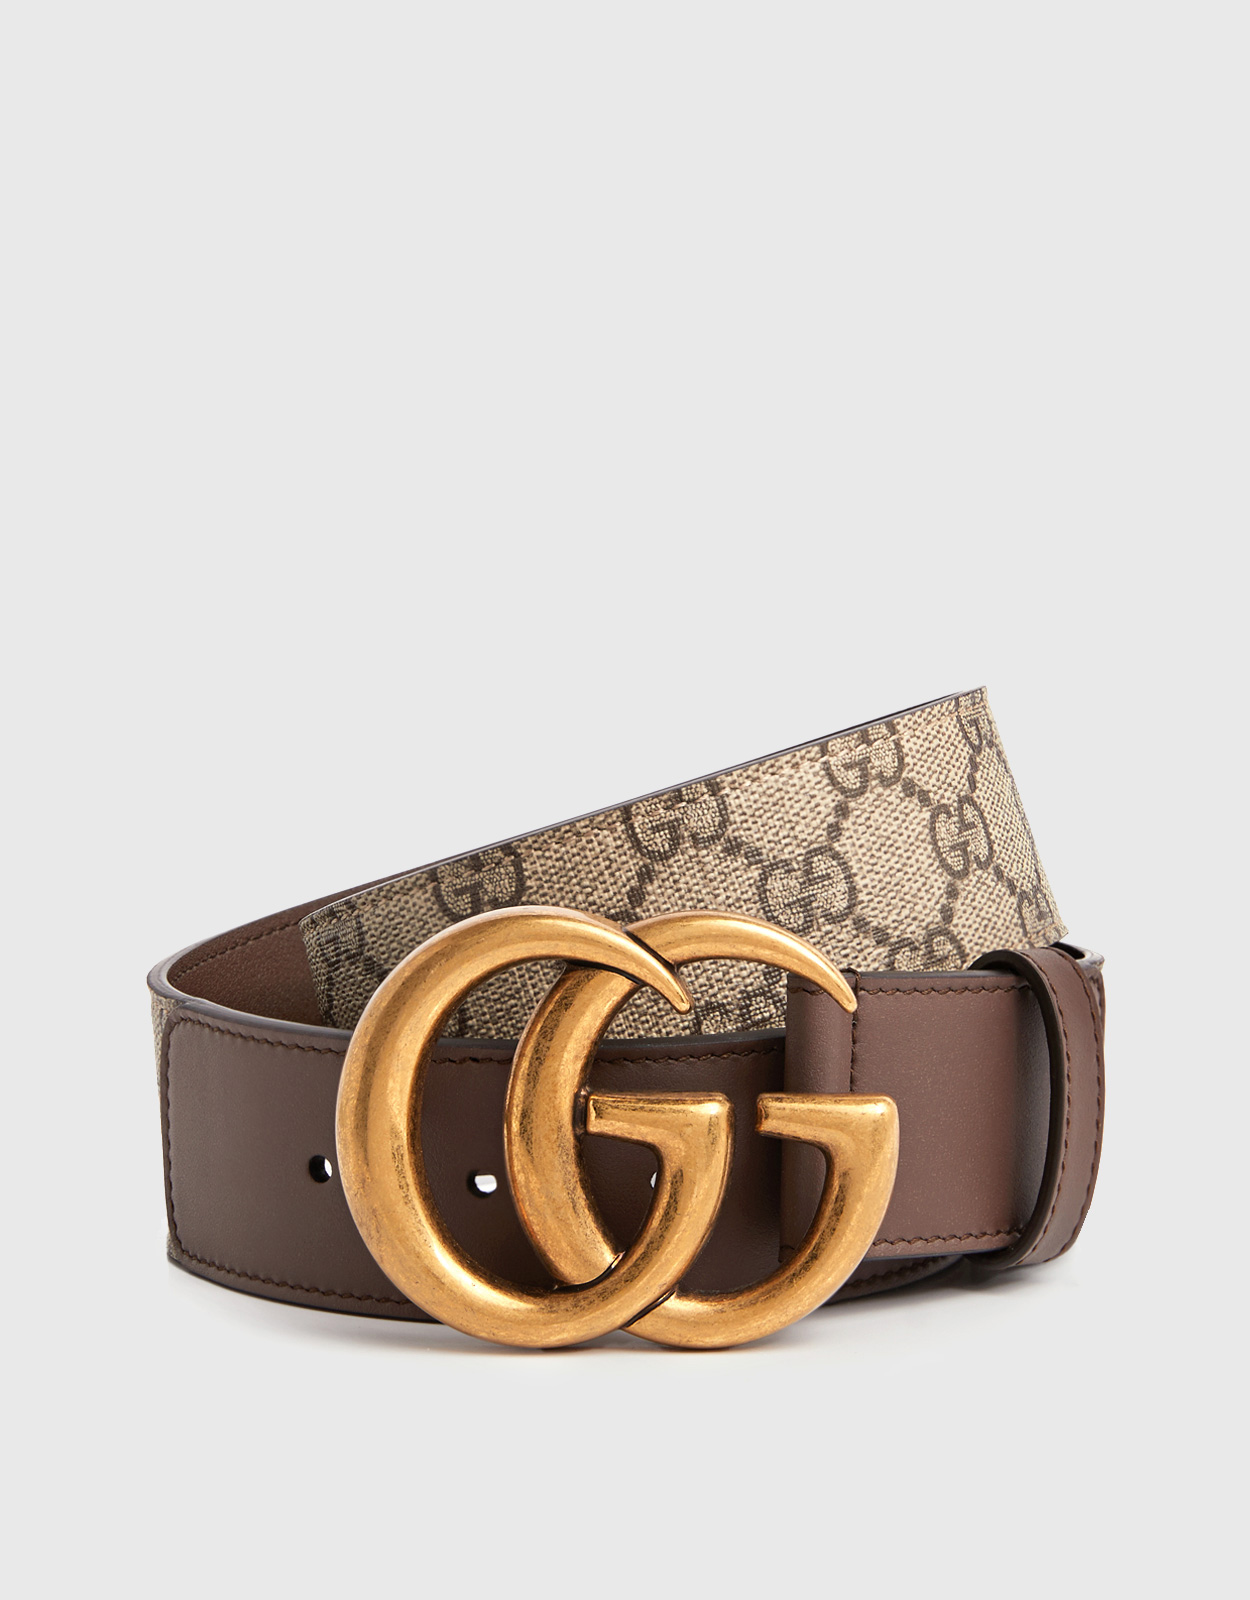 Belt Gucci Louis Vuitton Luxury goods, Gucci Men's Leather Belt